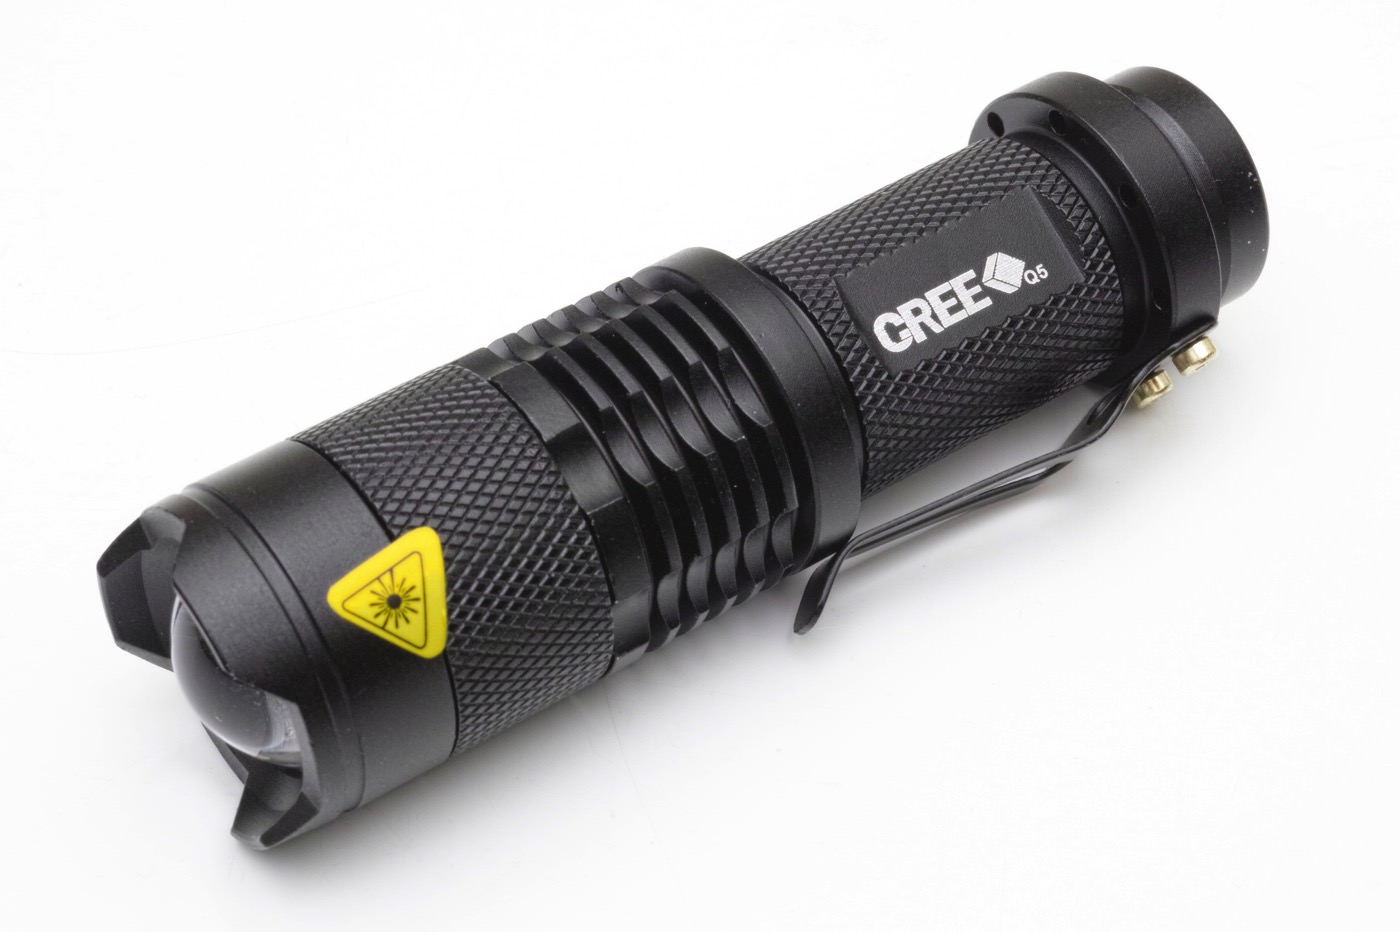 俺絶賛「UltraFire CREE Q5 LED ハンディライト ズーム機能付き」300円 